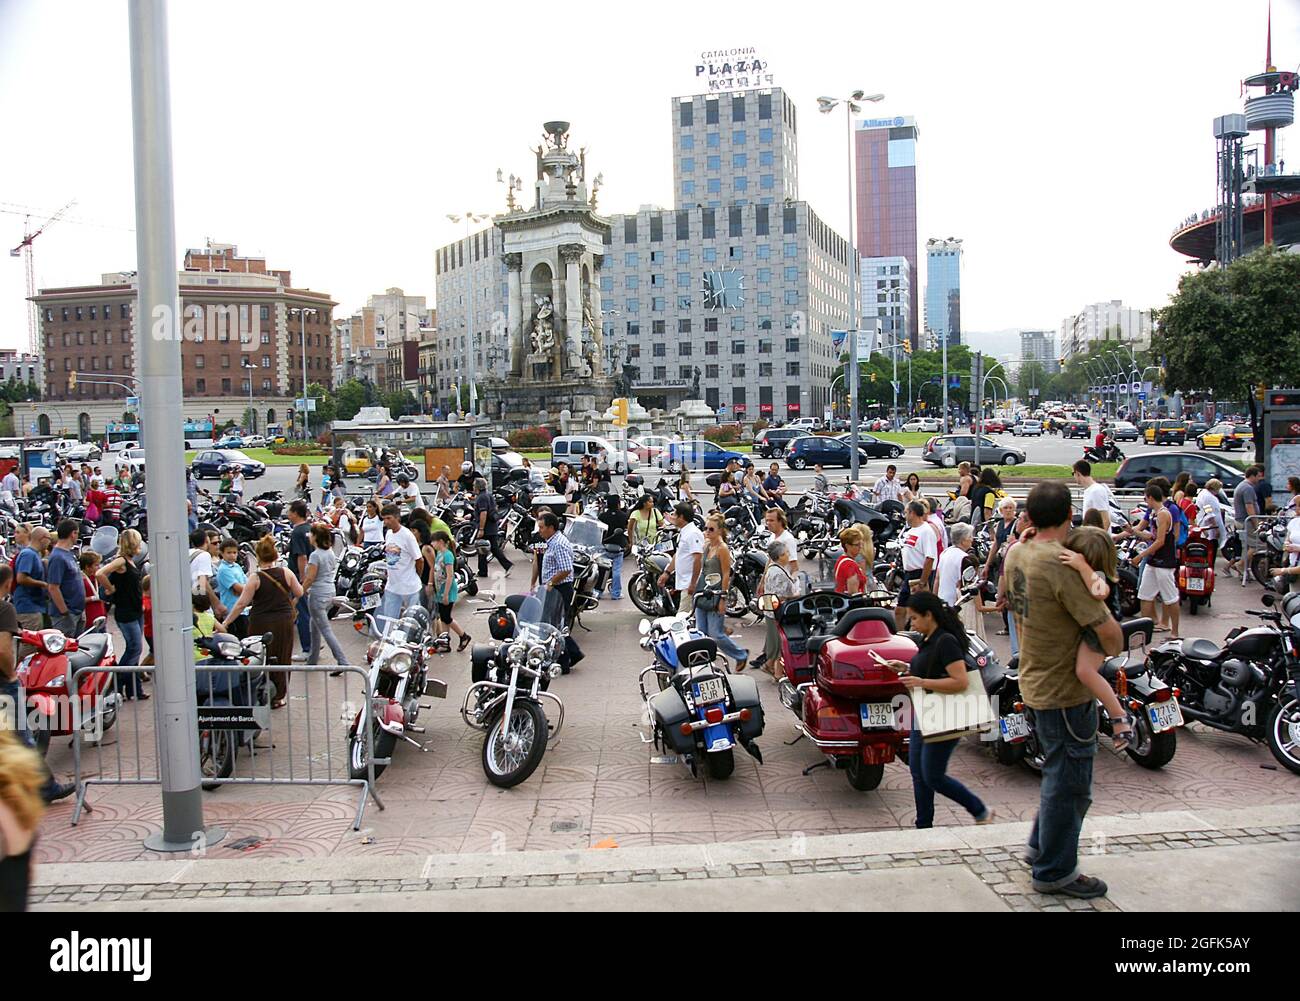 Incontro Harley Davidson in Plaza de España a Barcellona, Catalunya, Spagna, Europa Foto Stock